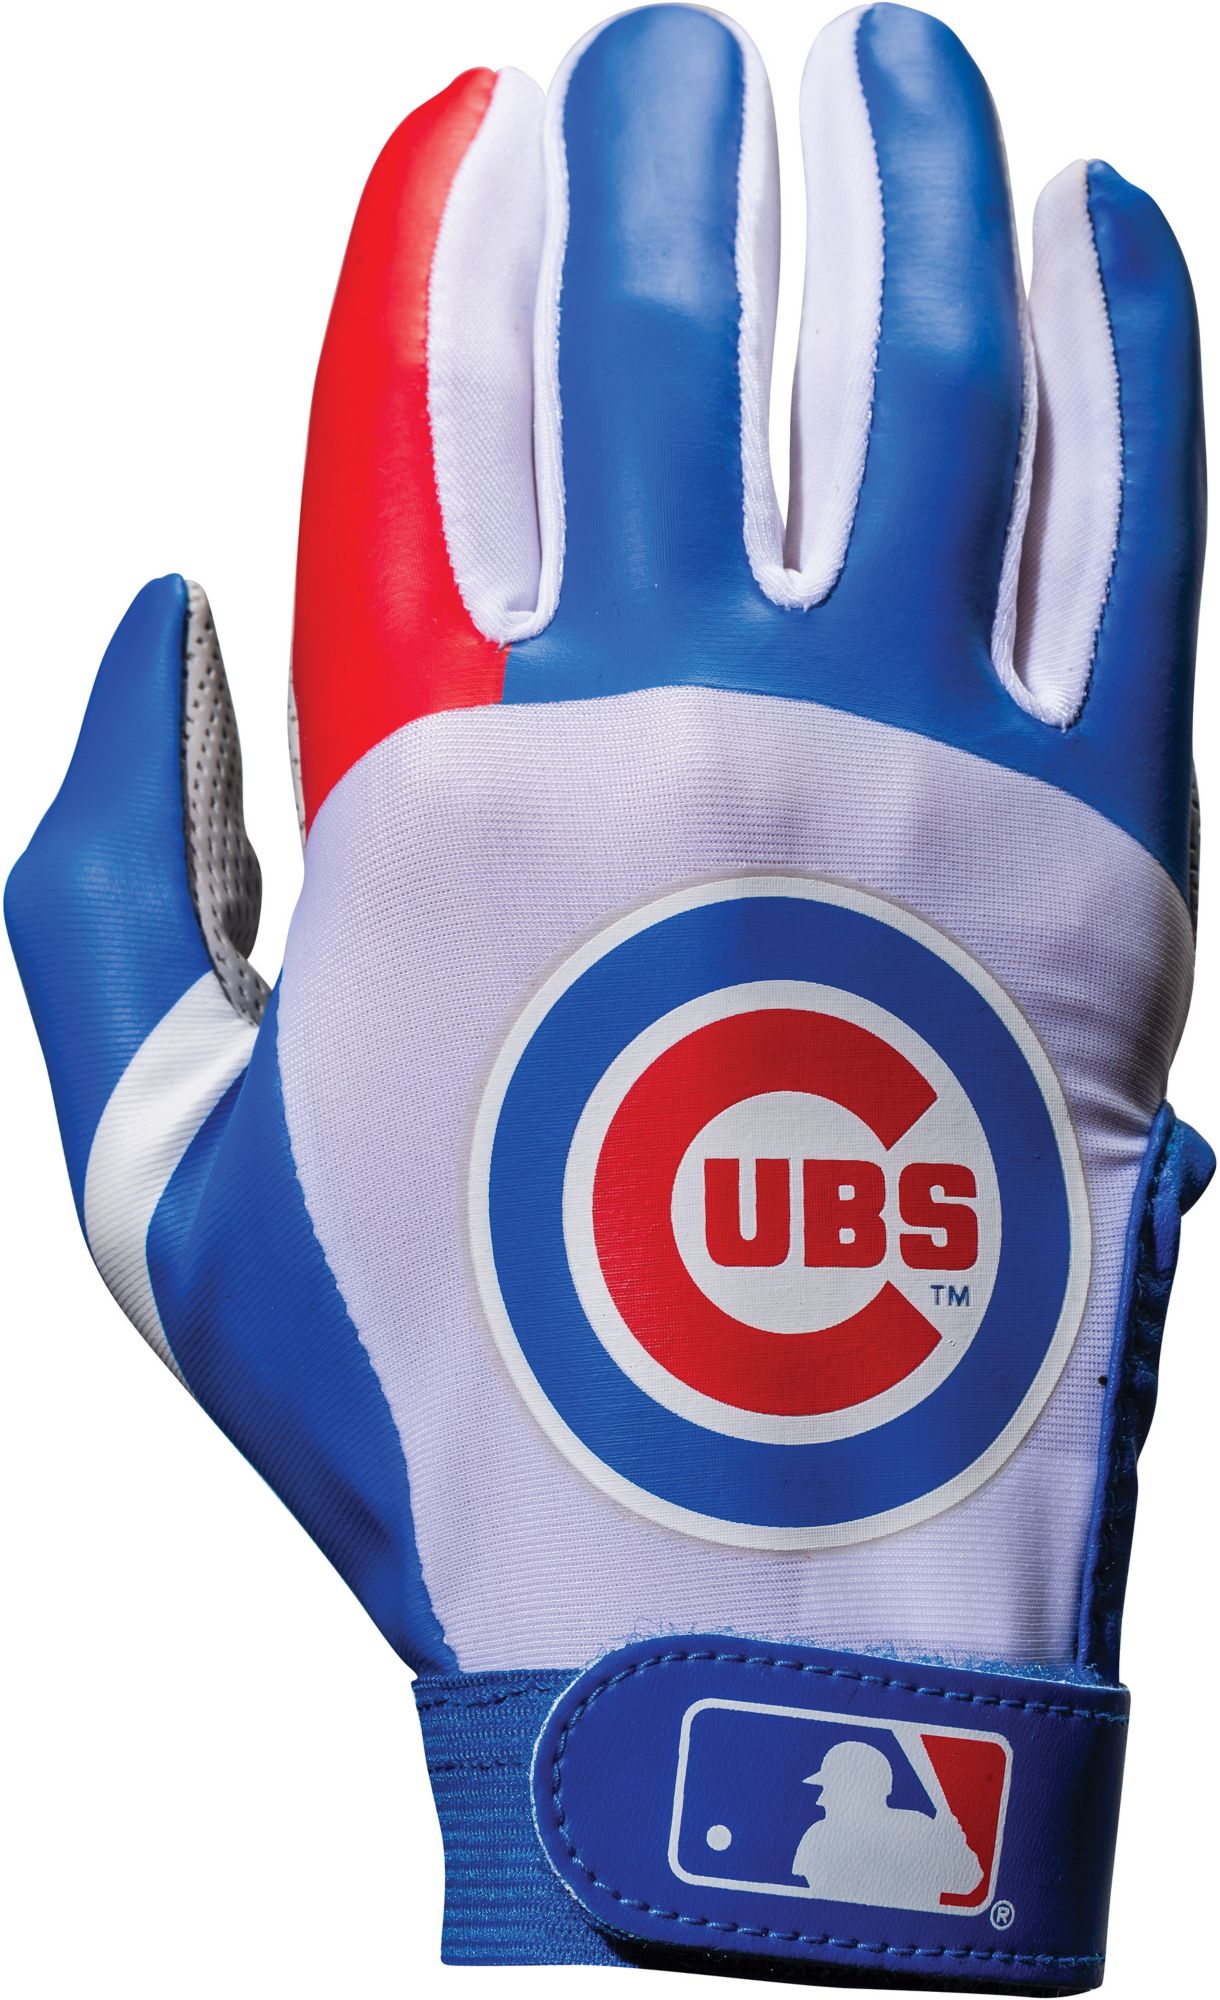 chicago cubs baseball gear